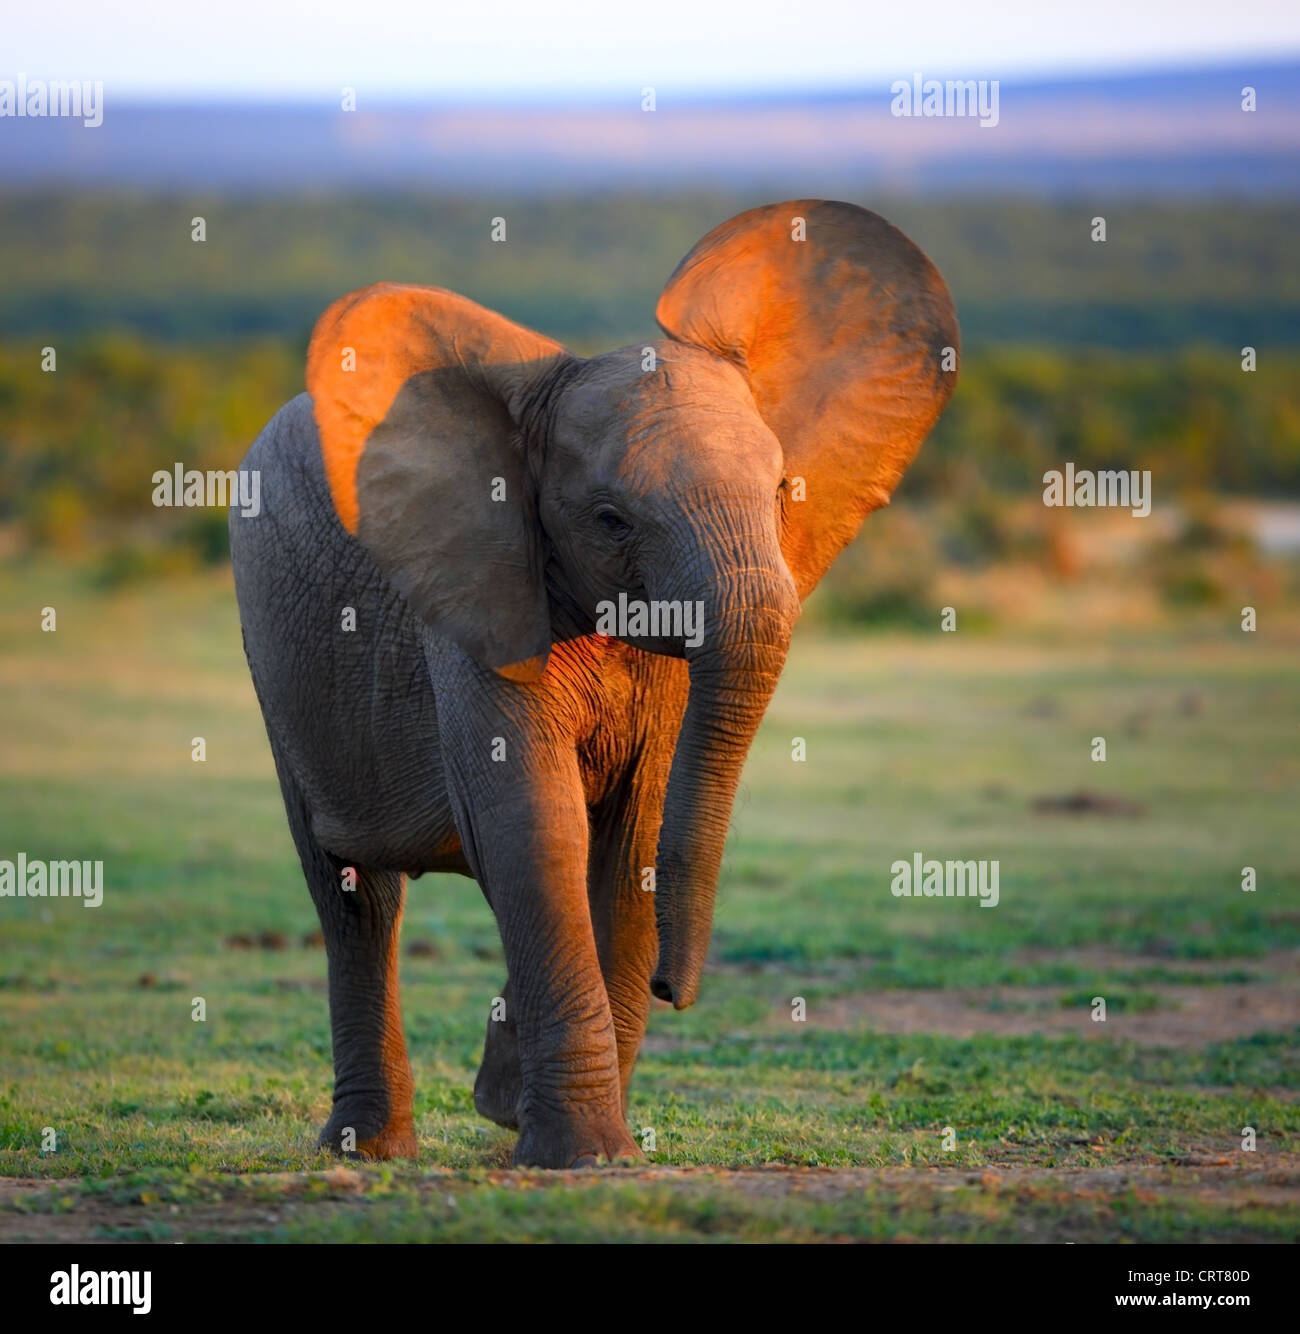 Bébé éléphant (flou en raison de l'obturation lente - face à l'accent) Addo Elephant National Park - Afrique du Sud Banque D'Images